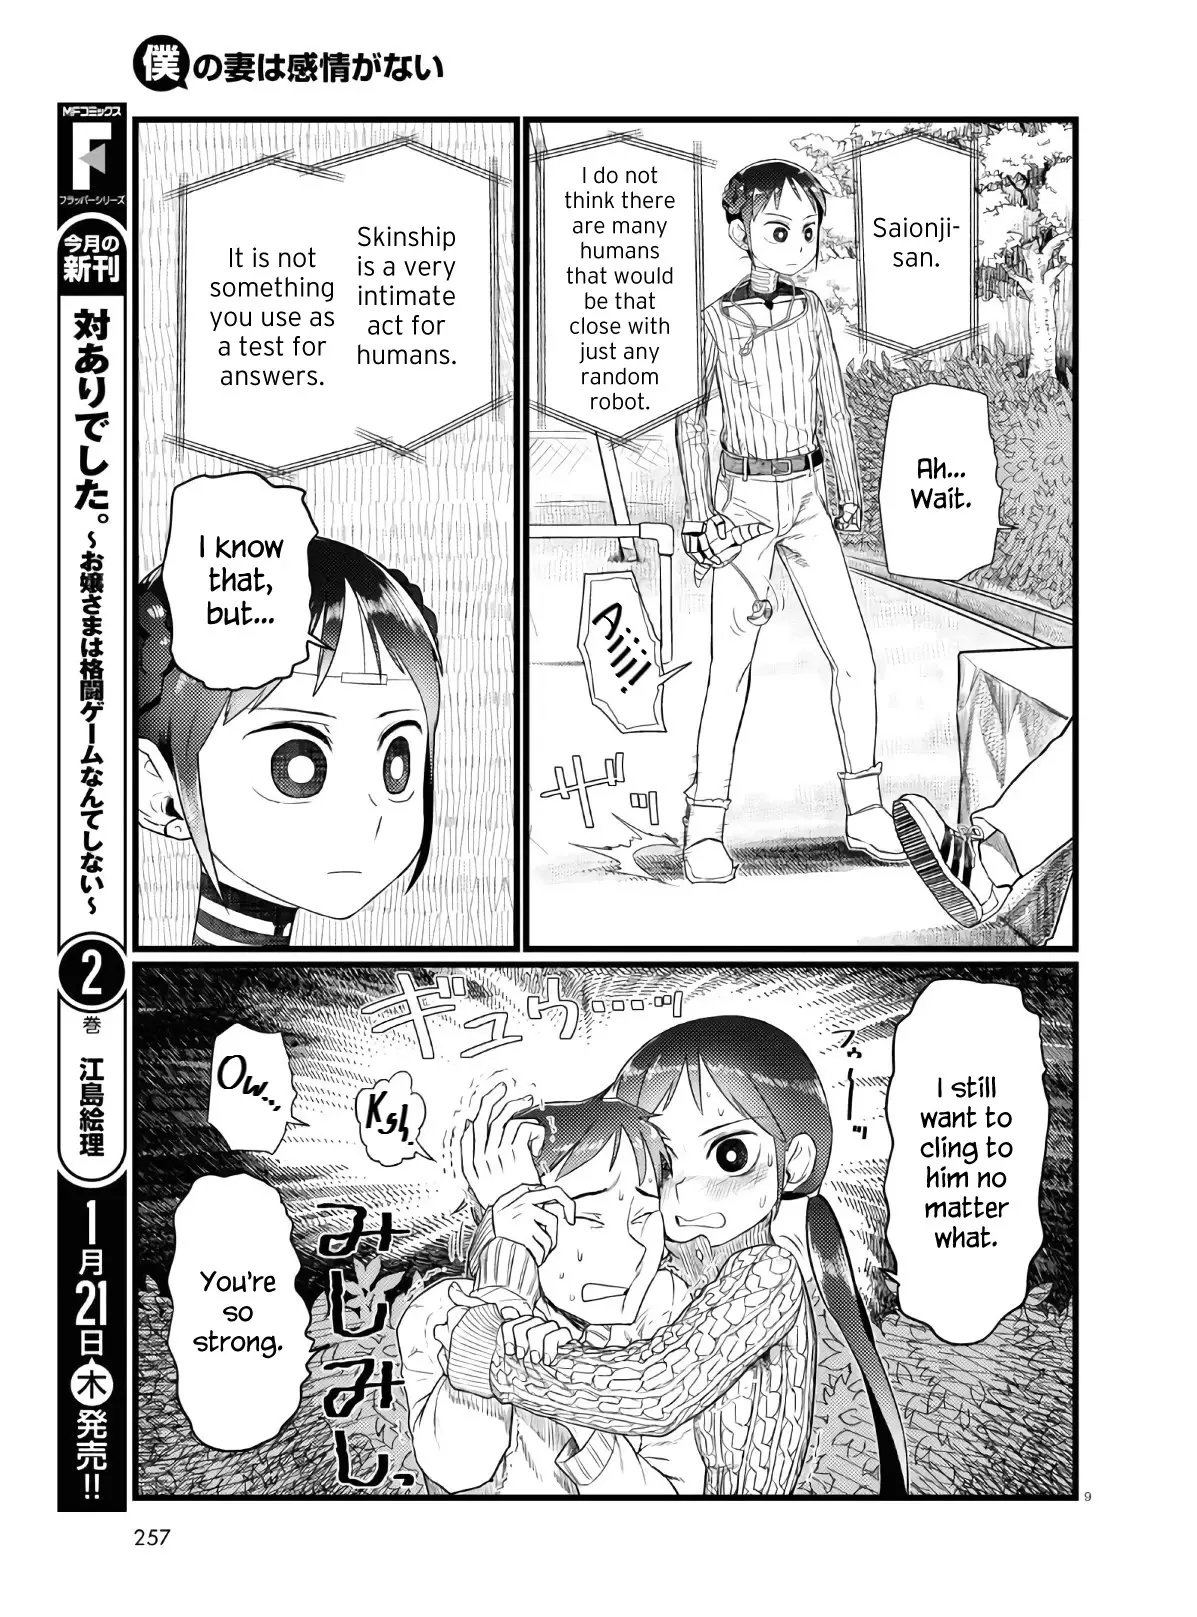 DISC] Boku no Tsuma wa Kanjou ga Nai Chapter 32 : r/manga